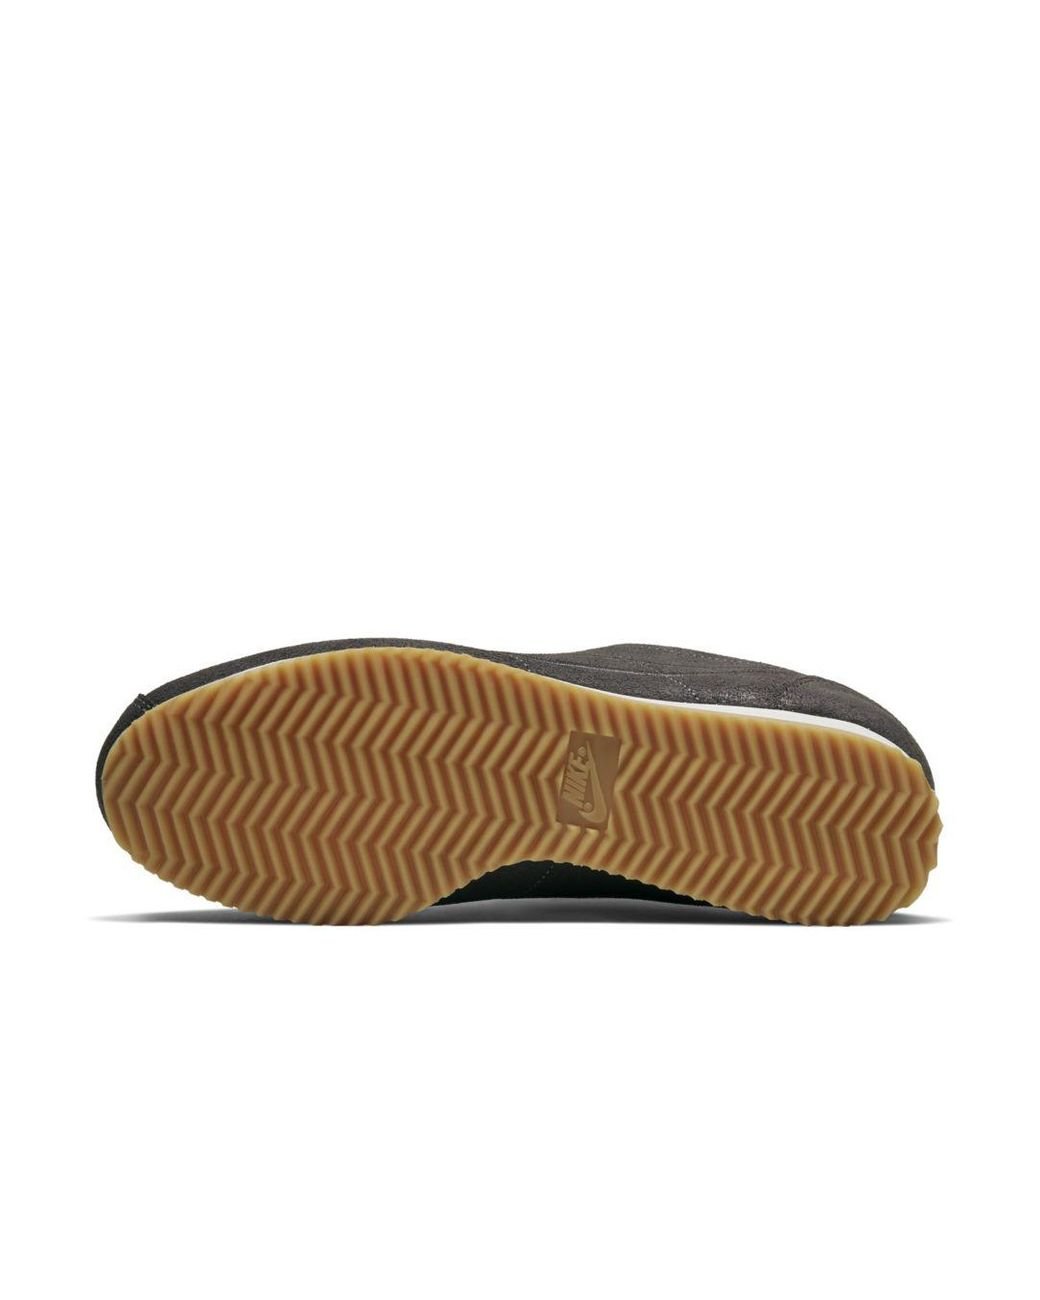 Nike Classic Cortez Premium Maria Sharapova X La Cortez Shoe in Gray | Lyst